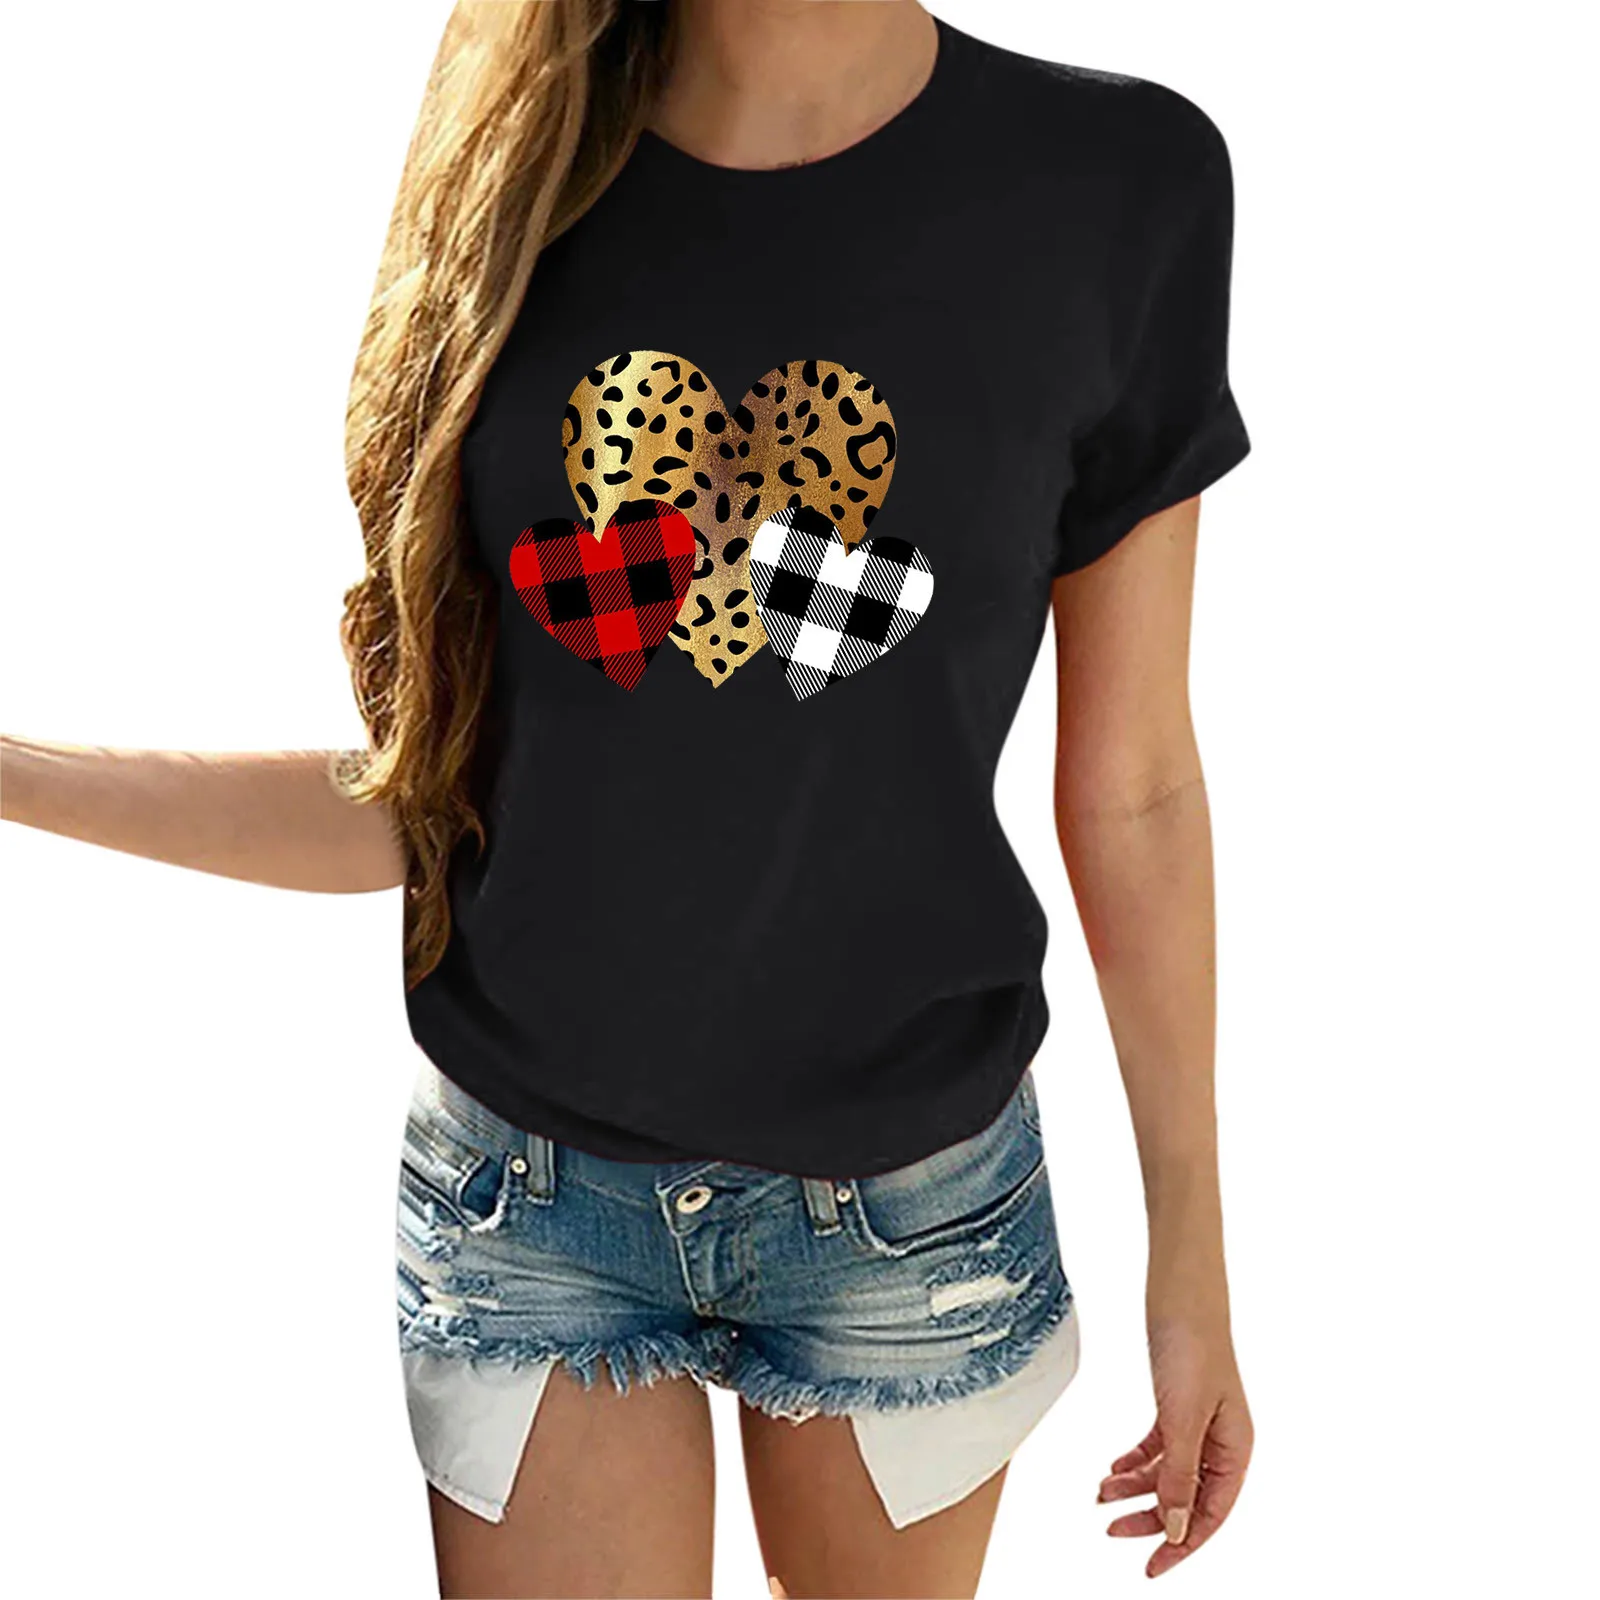 

Женская футболка с леопардовым принтом в виде сердца для влюбленных пары, модная футболка в стиле Харадзюку Tumblr Kawaii, женская футболка Tumblr ун...